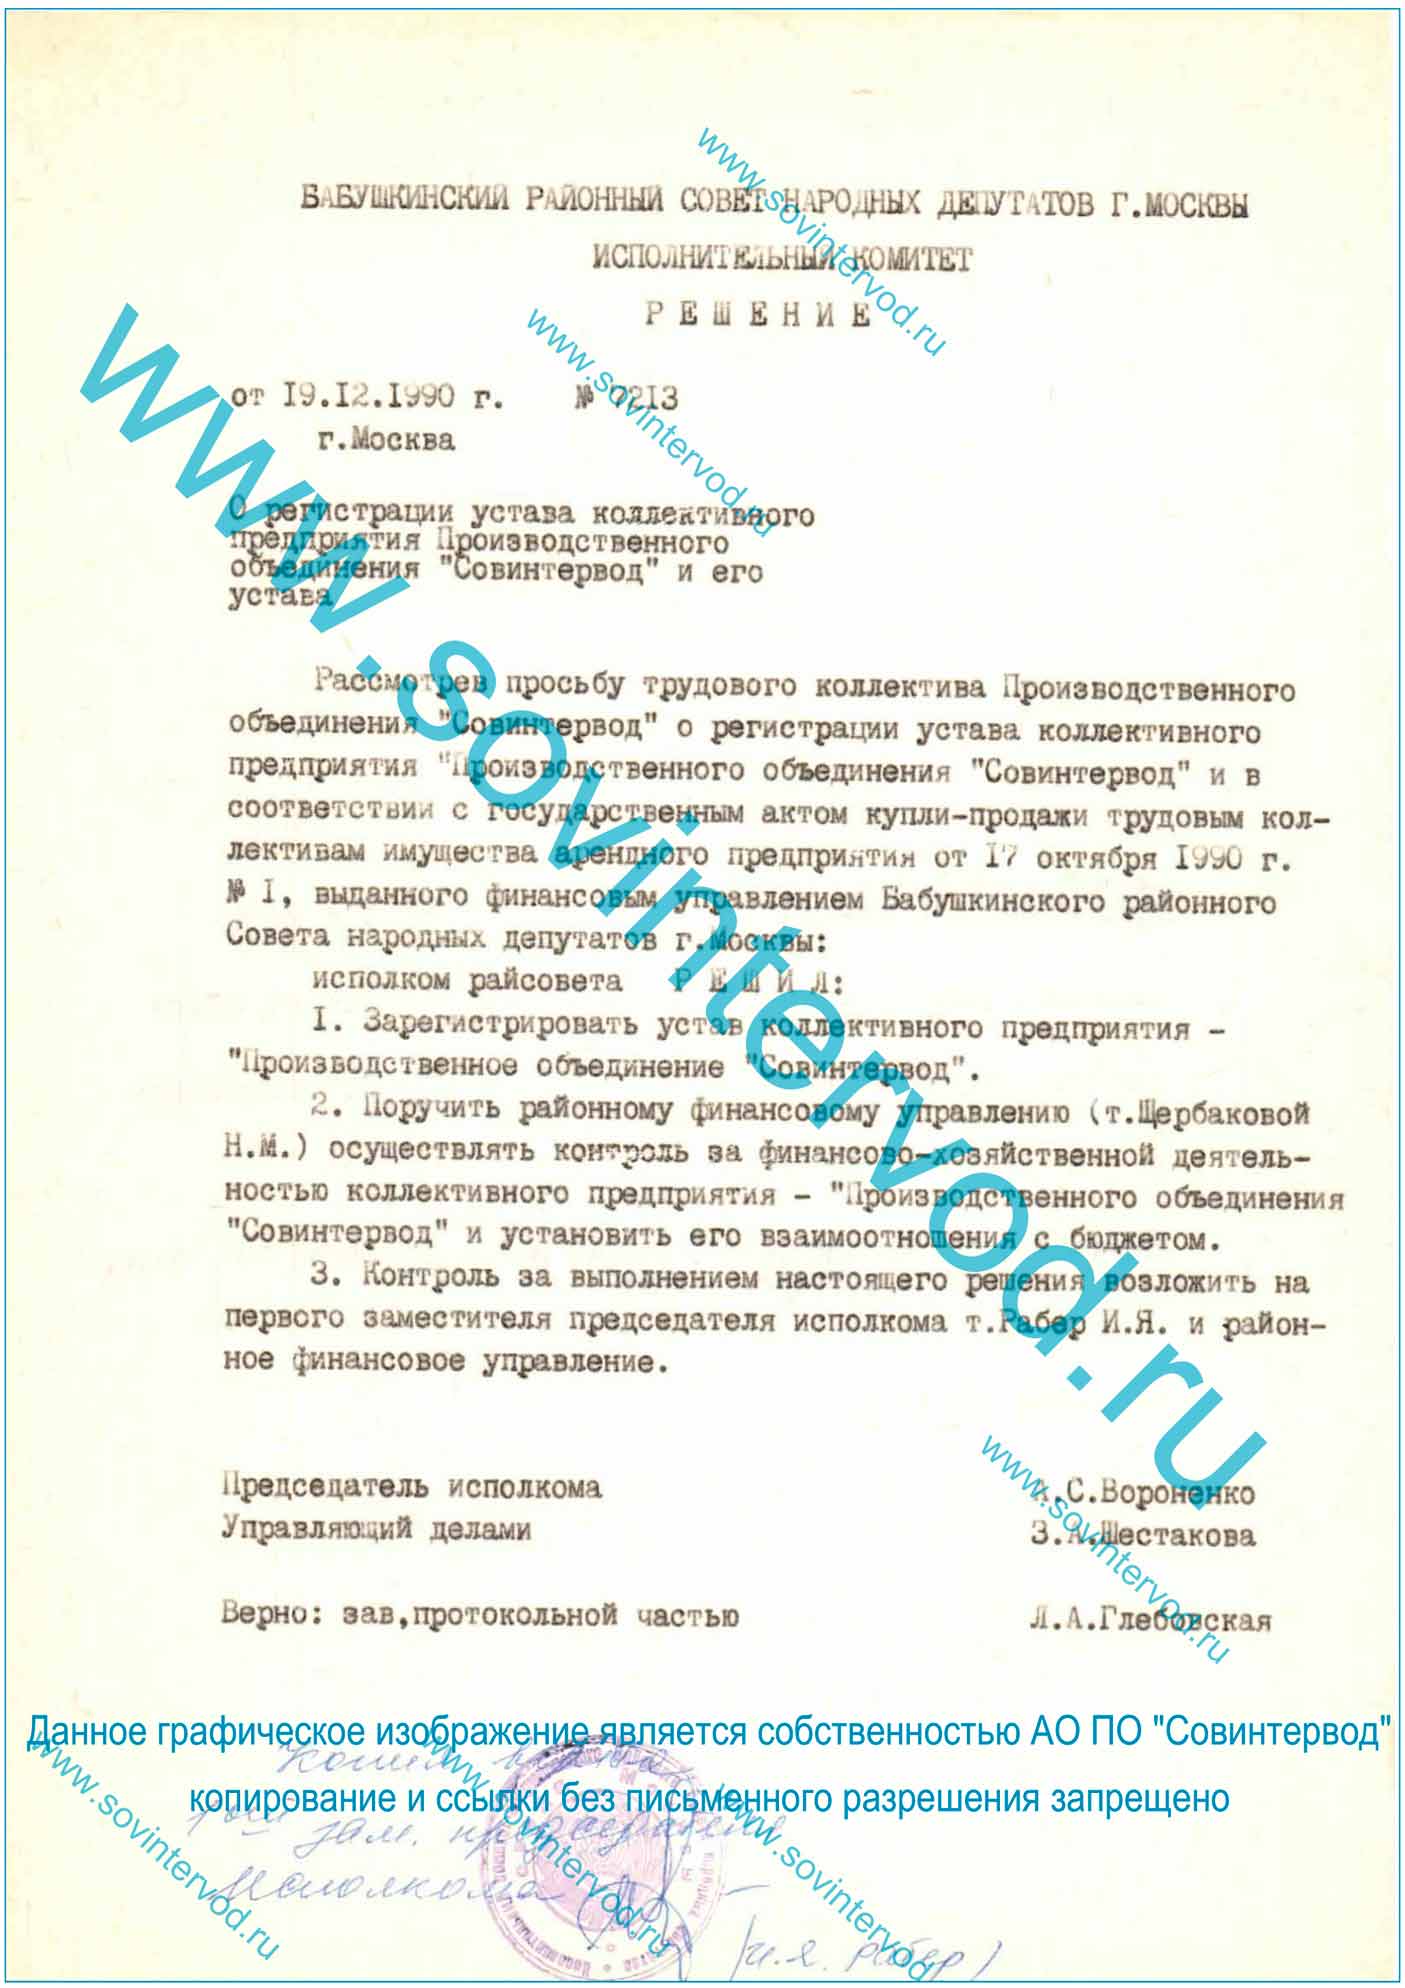 Решение от 19.12.90 №7213 о регистрации УСТАВА коллективного предприятия